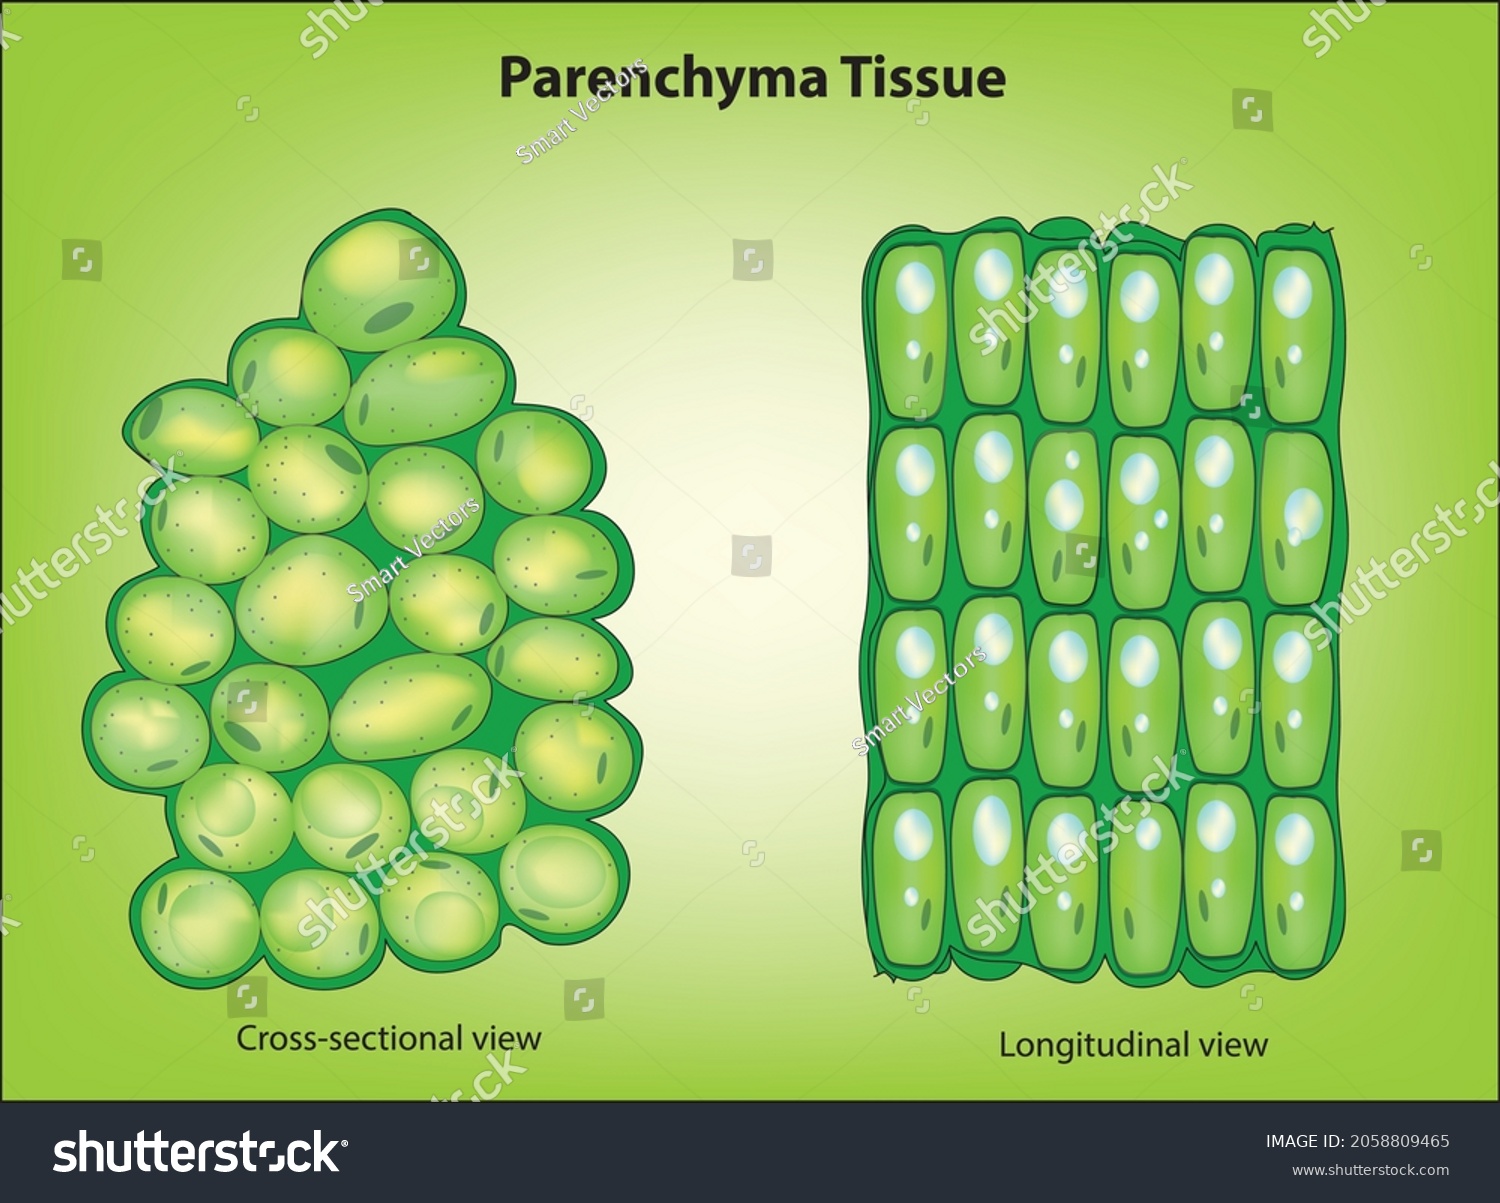 parenchyma tissue